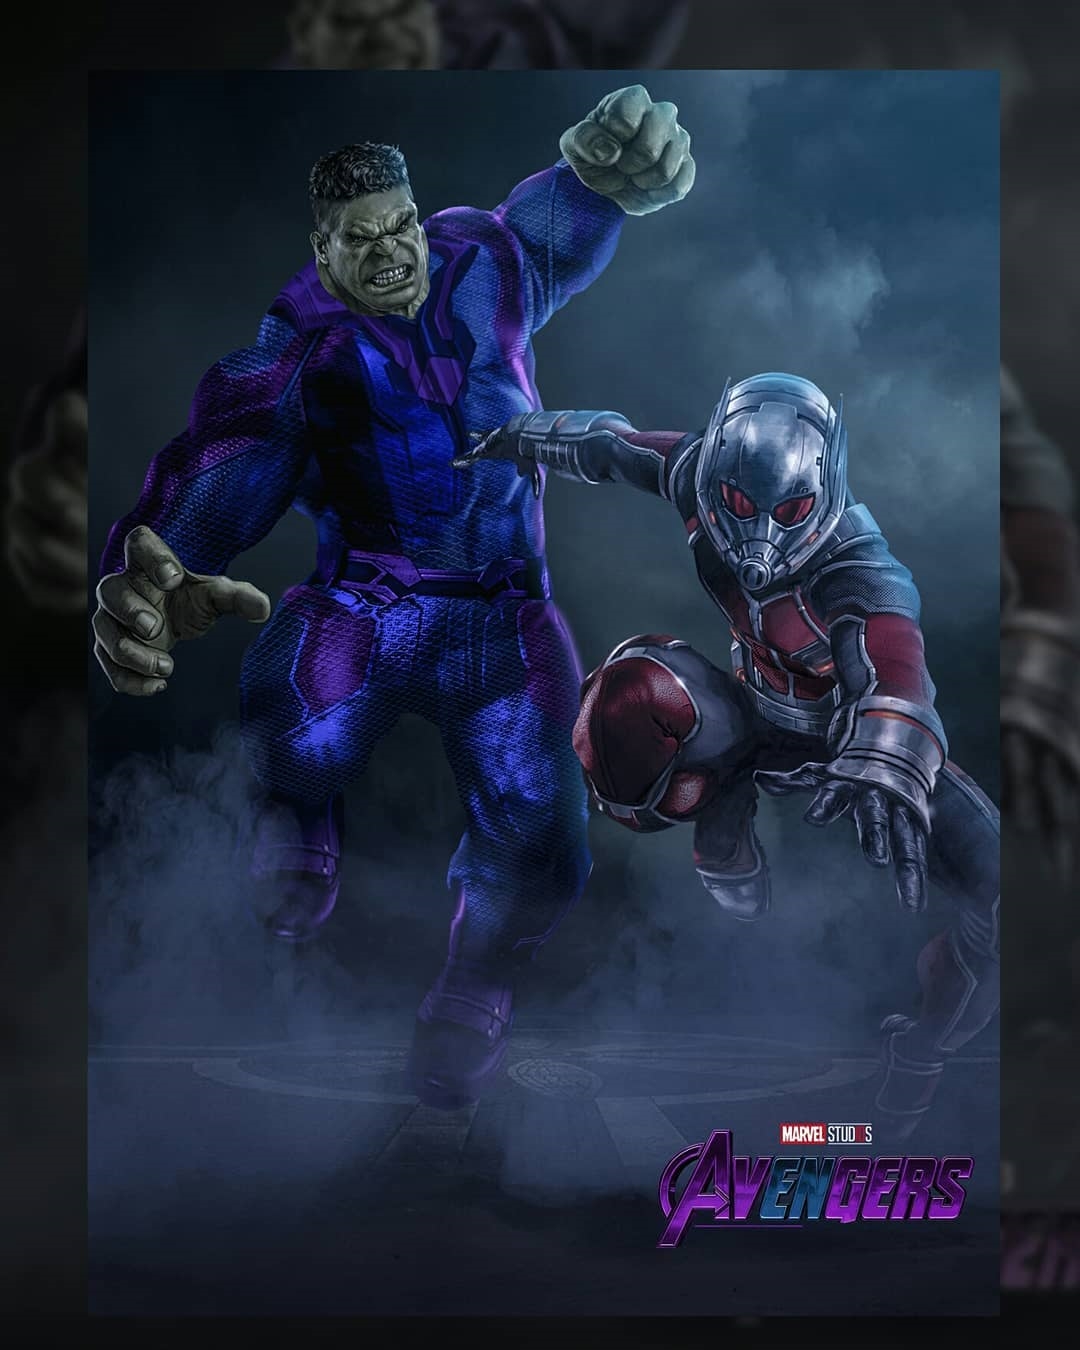 Phải, bạn không nhìn nhầm đâu. Hulk sẽ có bộ trang phục siêu anh hùng riêng! Mặc dù trông có vẻ kín cổng cao tường hơn chiếc quần cộc huyền thoại của mình, bên cạnh câu hỏi về độ bền của bộ trang phục mới này, người hâm mộ cũng thắc mắc rằng tác dụng của nó đối với Hulk là gì, và liệu rằng điều đó có liên hệ tới hành trình du hành xuyên thời gian của đội tàn binh Avengers. Bên cạnh đó, cách mà Người Kiến sẽ tham gia vào Cuộc Chiến Vô Cực cũng đã được tiết lộ trong bom tấn Người Kiến Và Chiến Binh Ong đang được công chiếu ngoài rạp. Sự xuất hiện của anh sẽ mang khái niệm Thế Giới Lượng Tử tới Avengers và mở ra hướng đi cho các thành viên trong đội. 